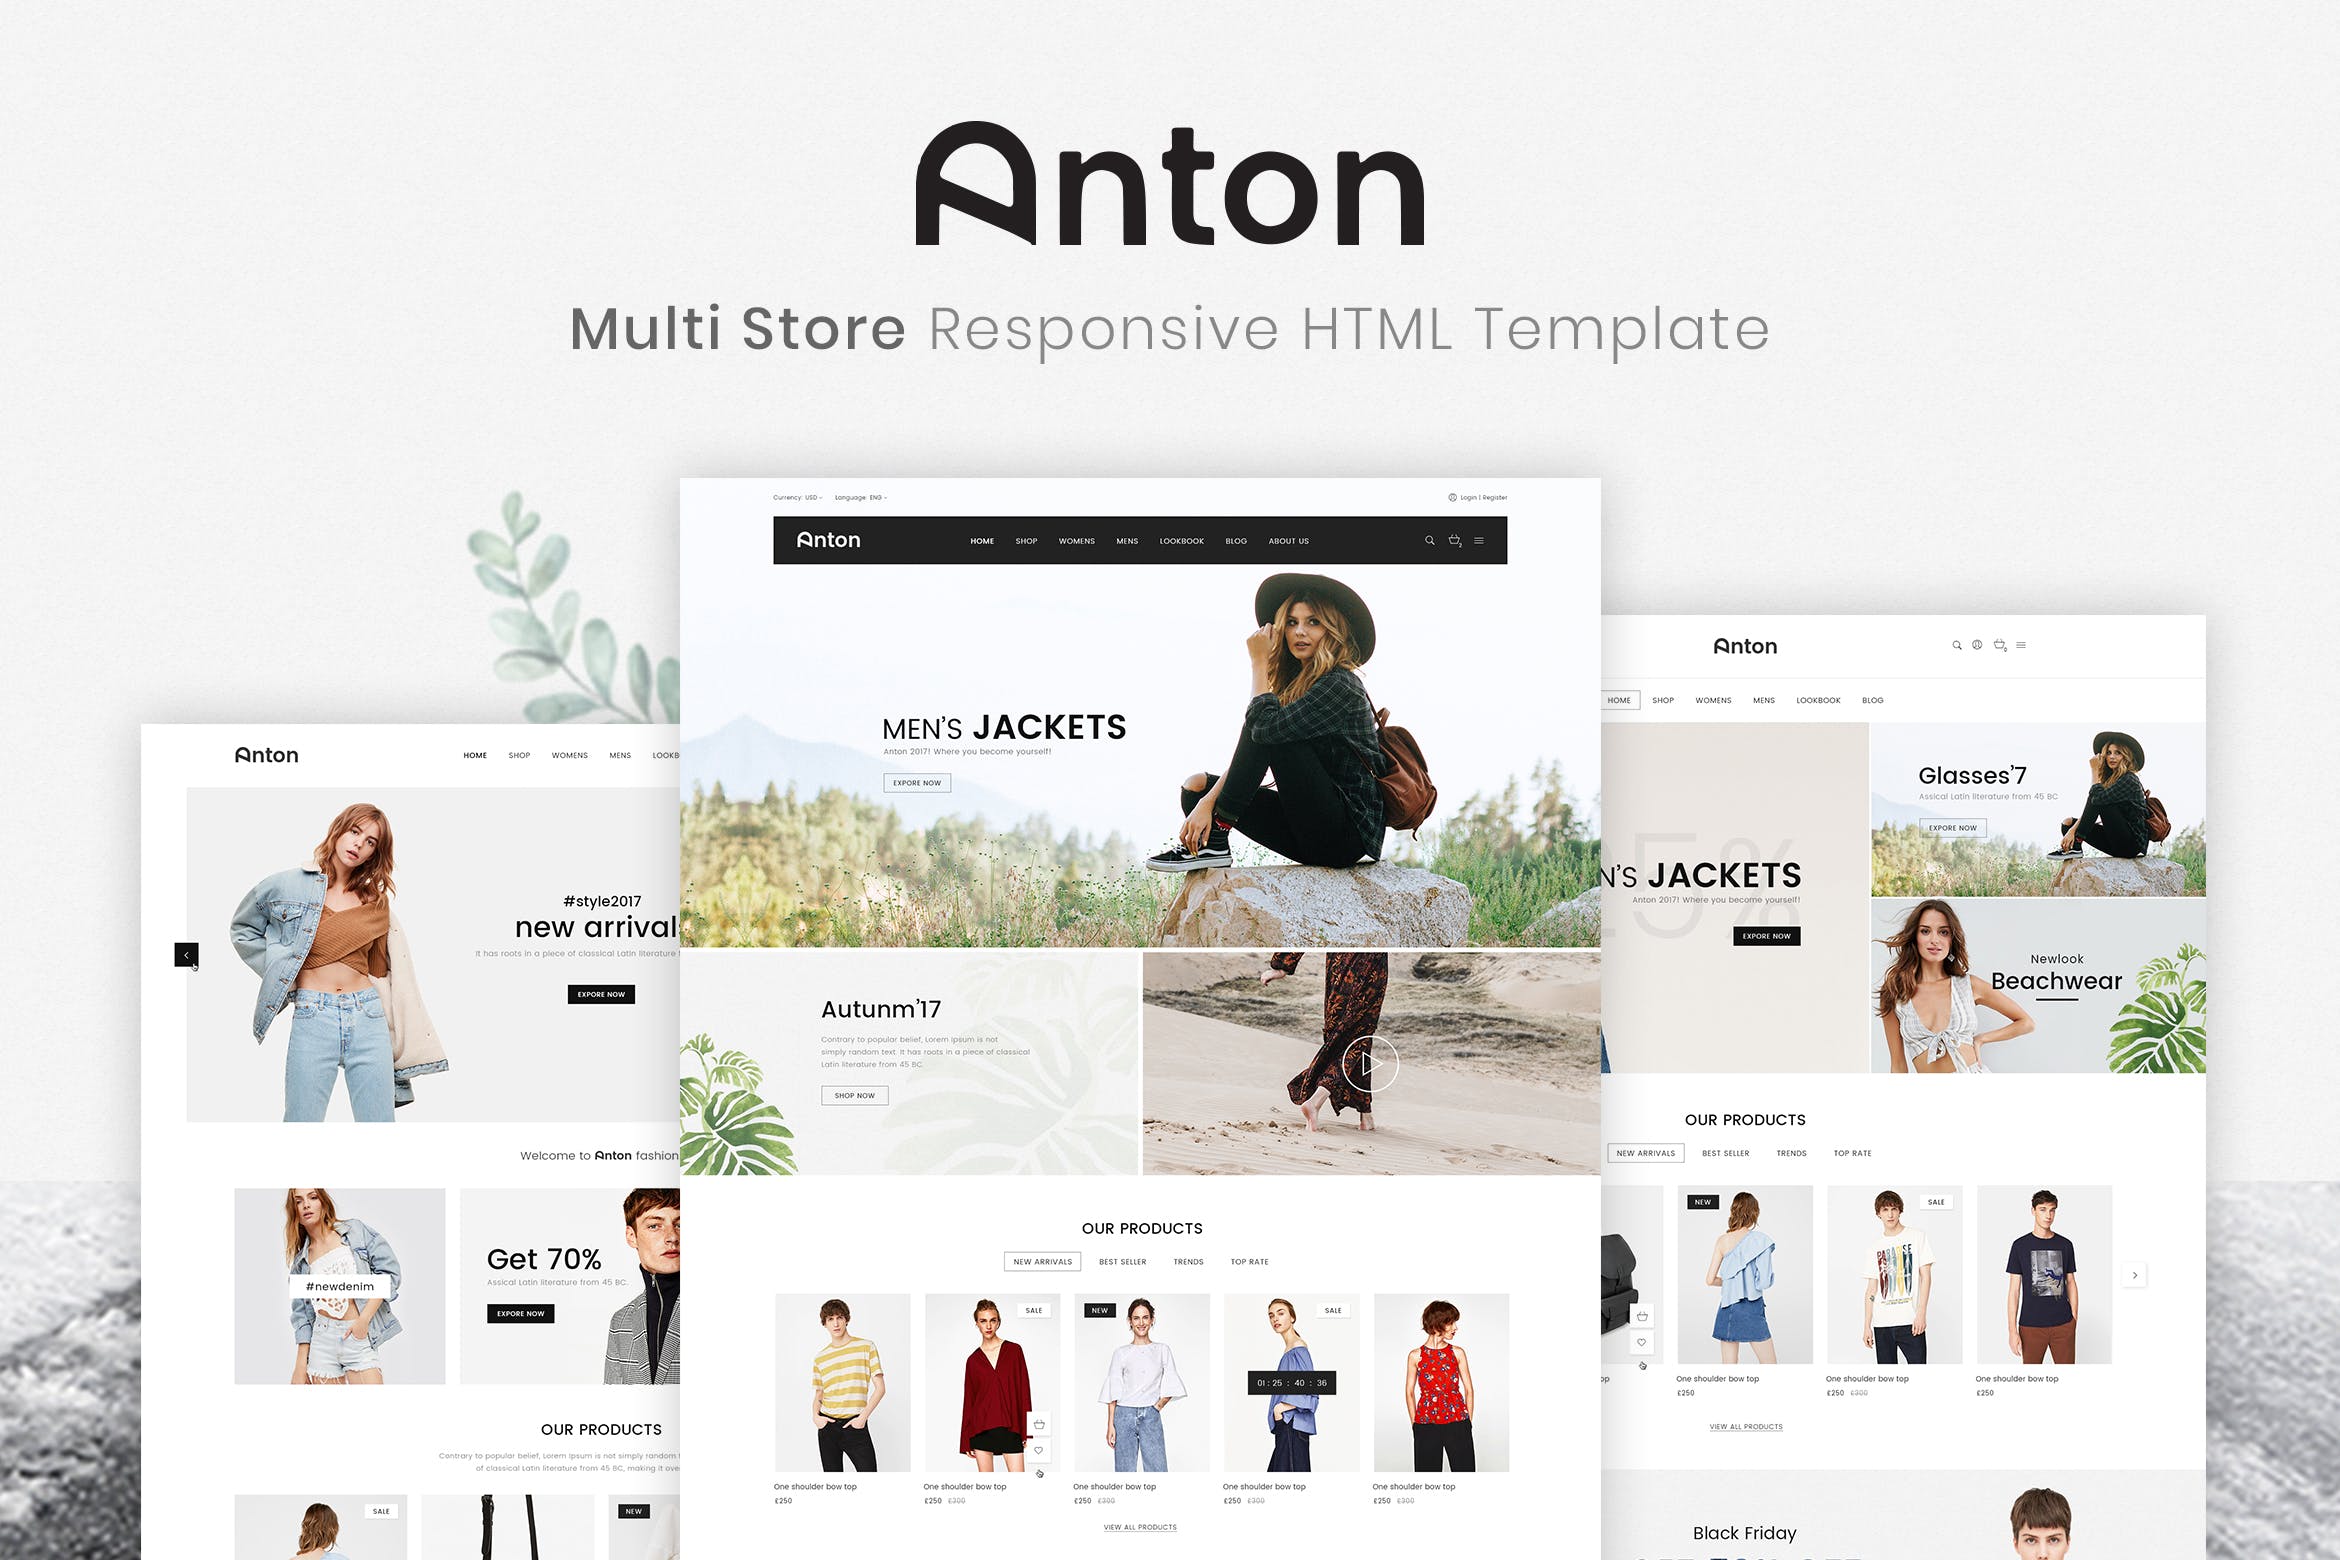 响应式时尚服饰网上商城HTML模板非凡图库精选素材 Anton | Multi Store Responsive HTML Template插图